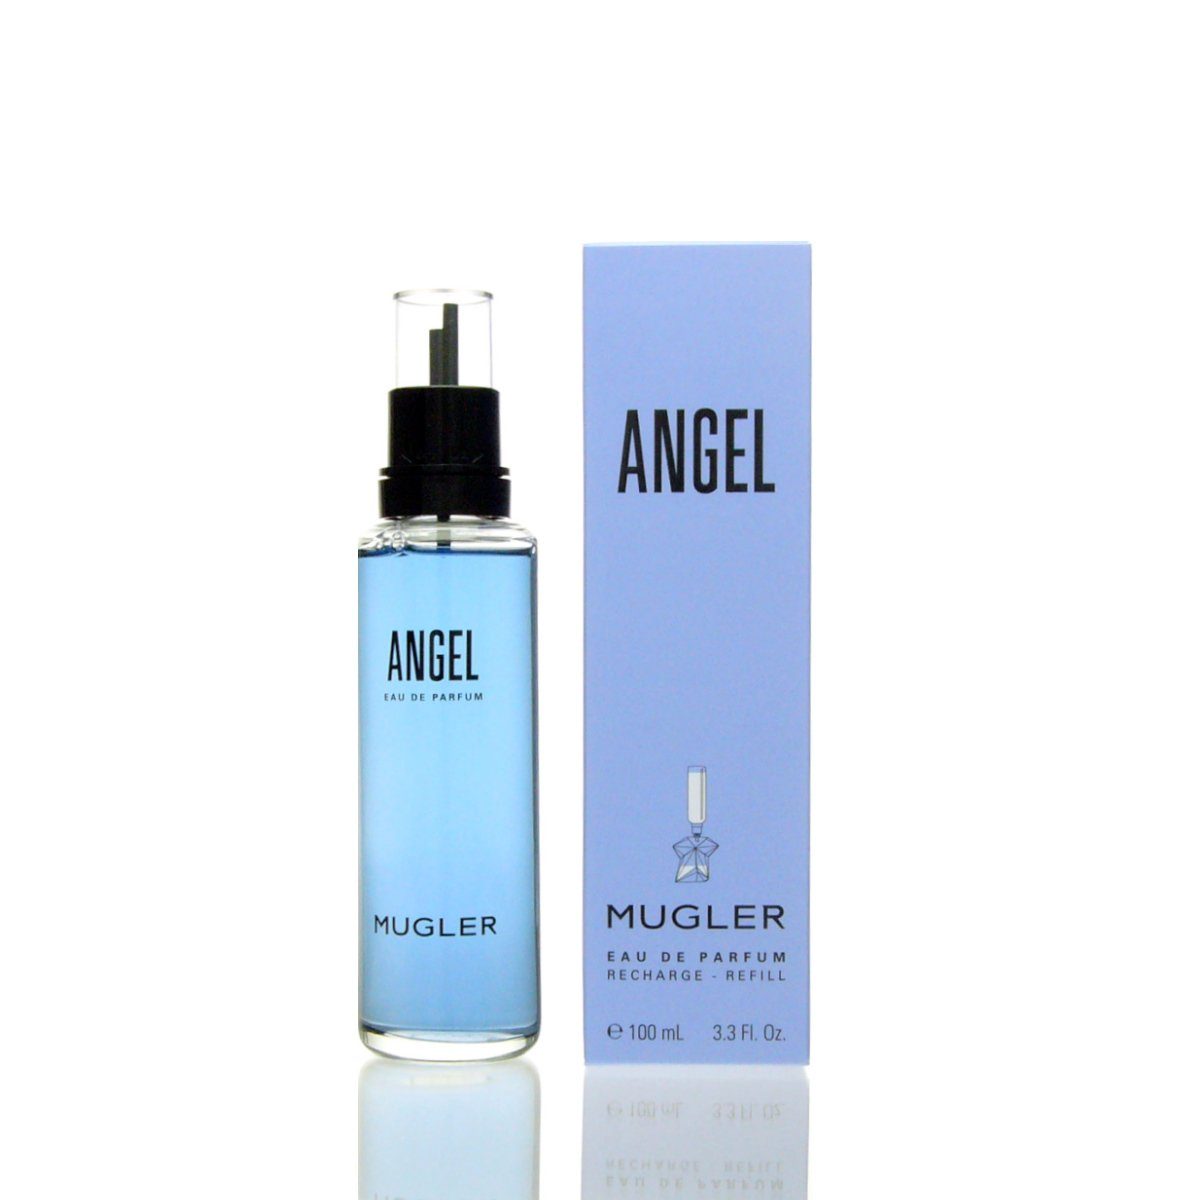 Mugler Eau de Parfum Thierry Mugler Angel Eau de Parfum Refill 100 ml | Eau de Parfum